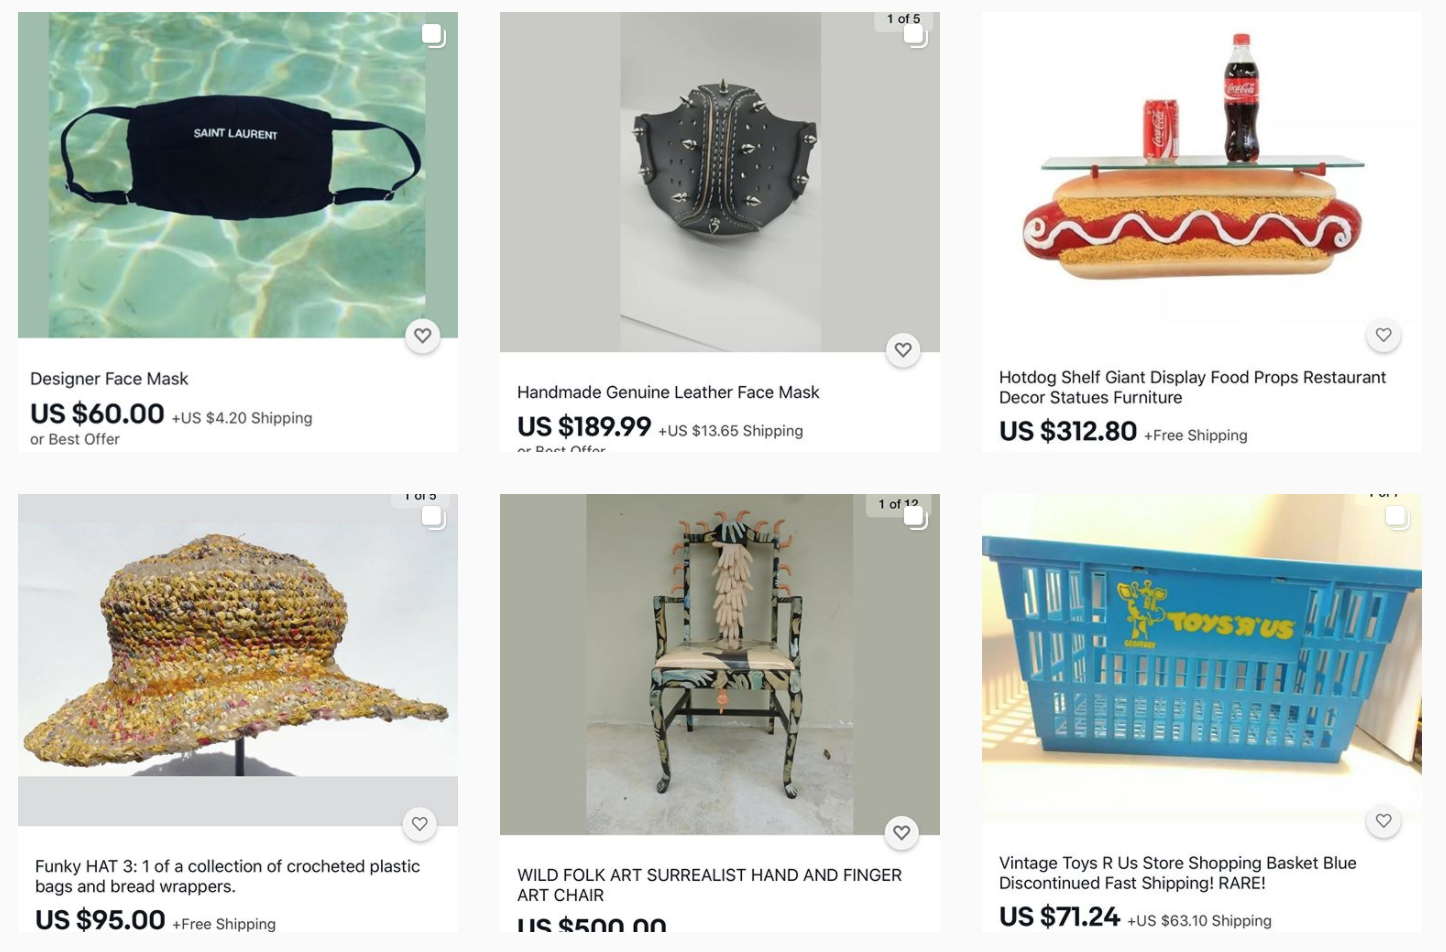 Bae, l'account Instagram degli oggetti più strani in vendita